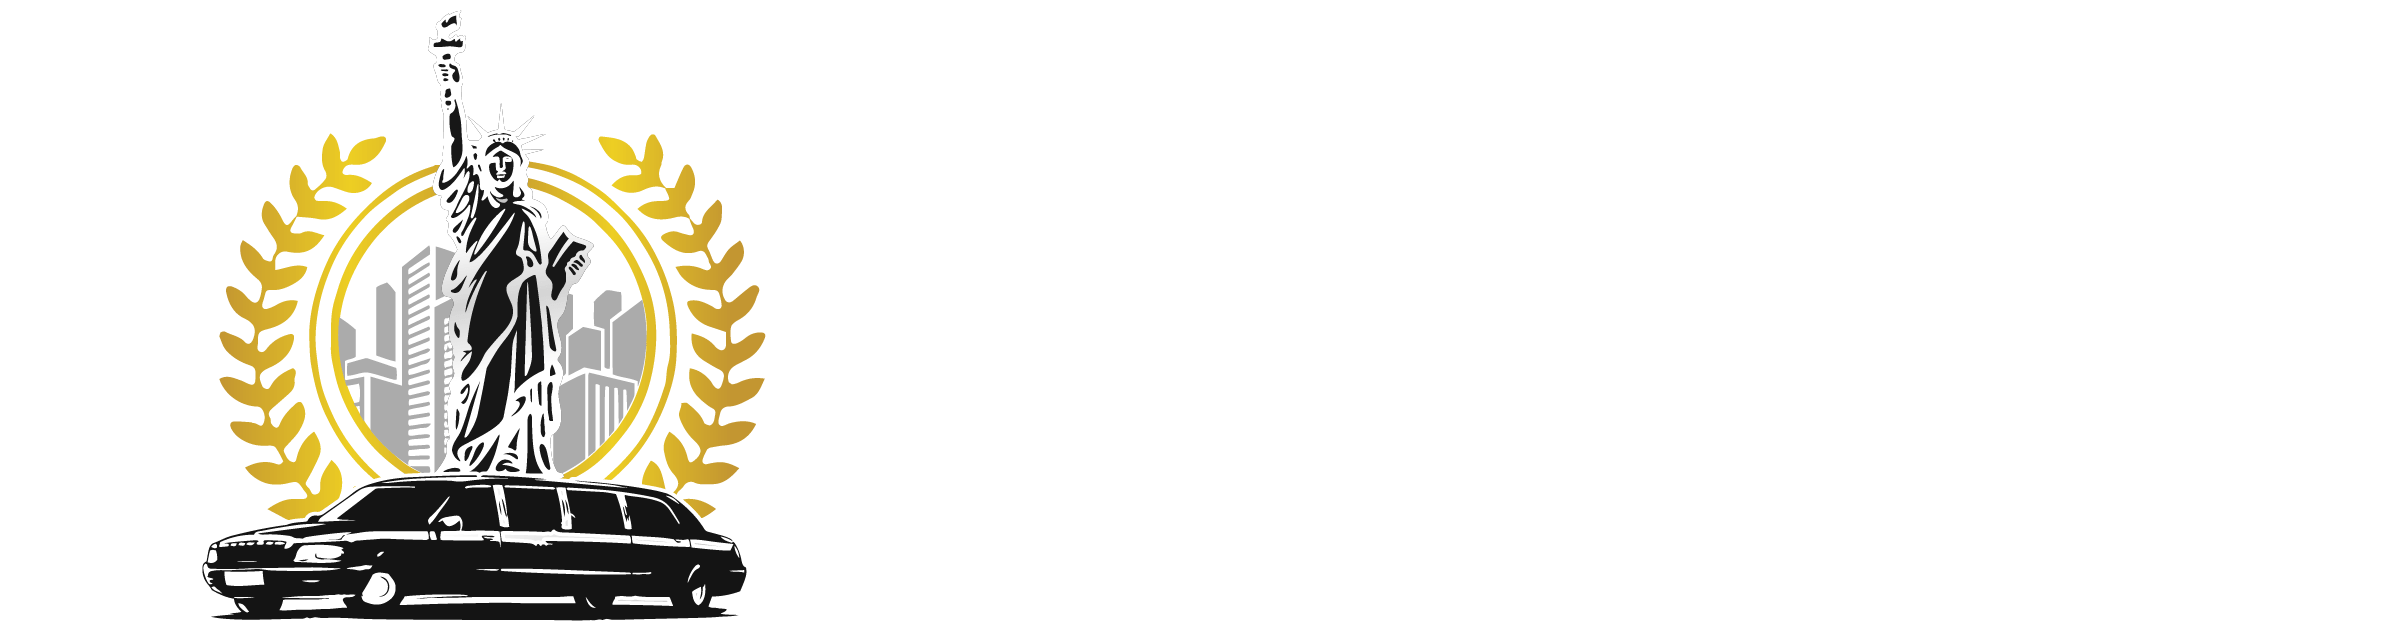 Union Limousine 